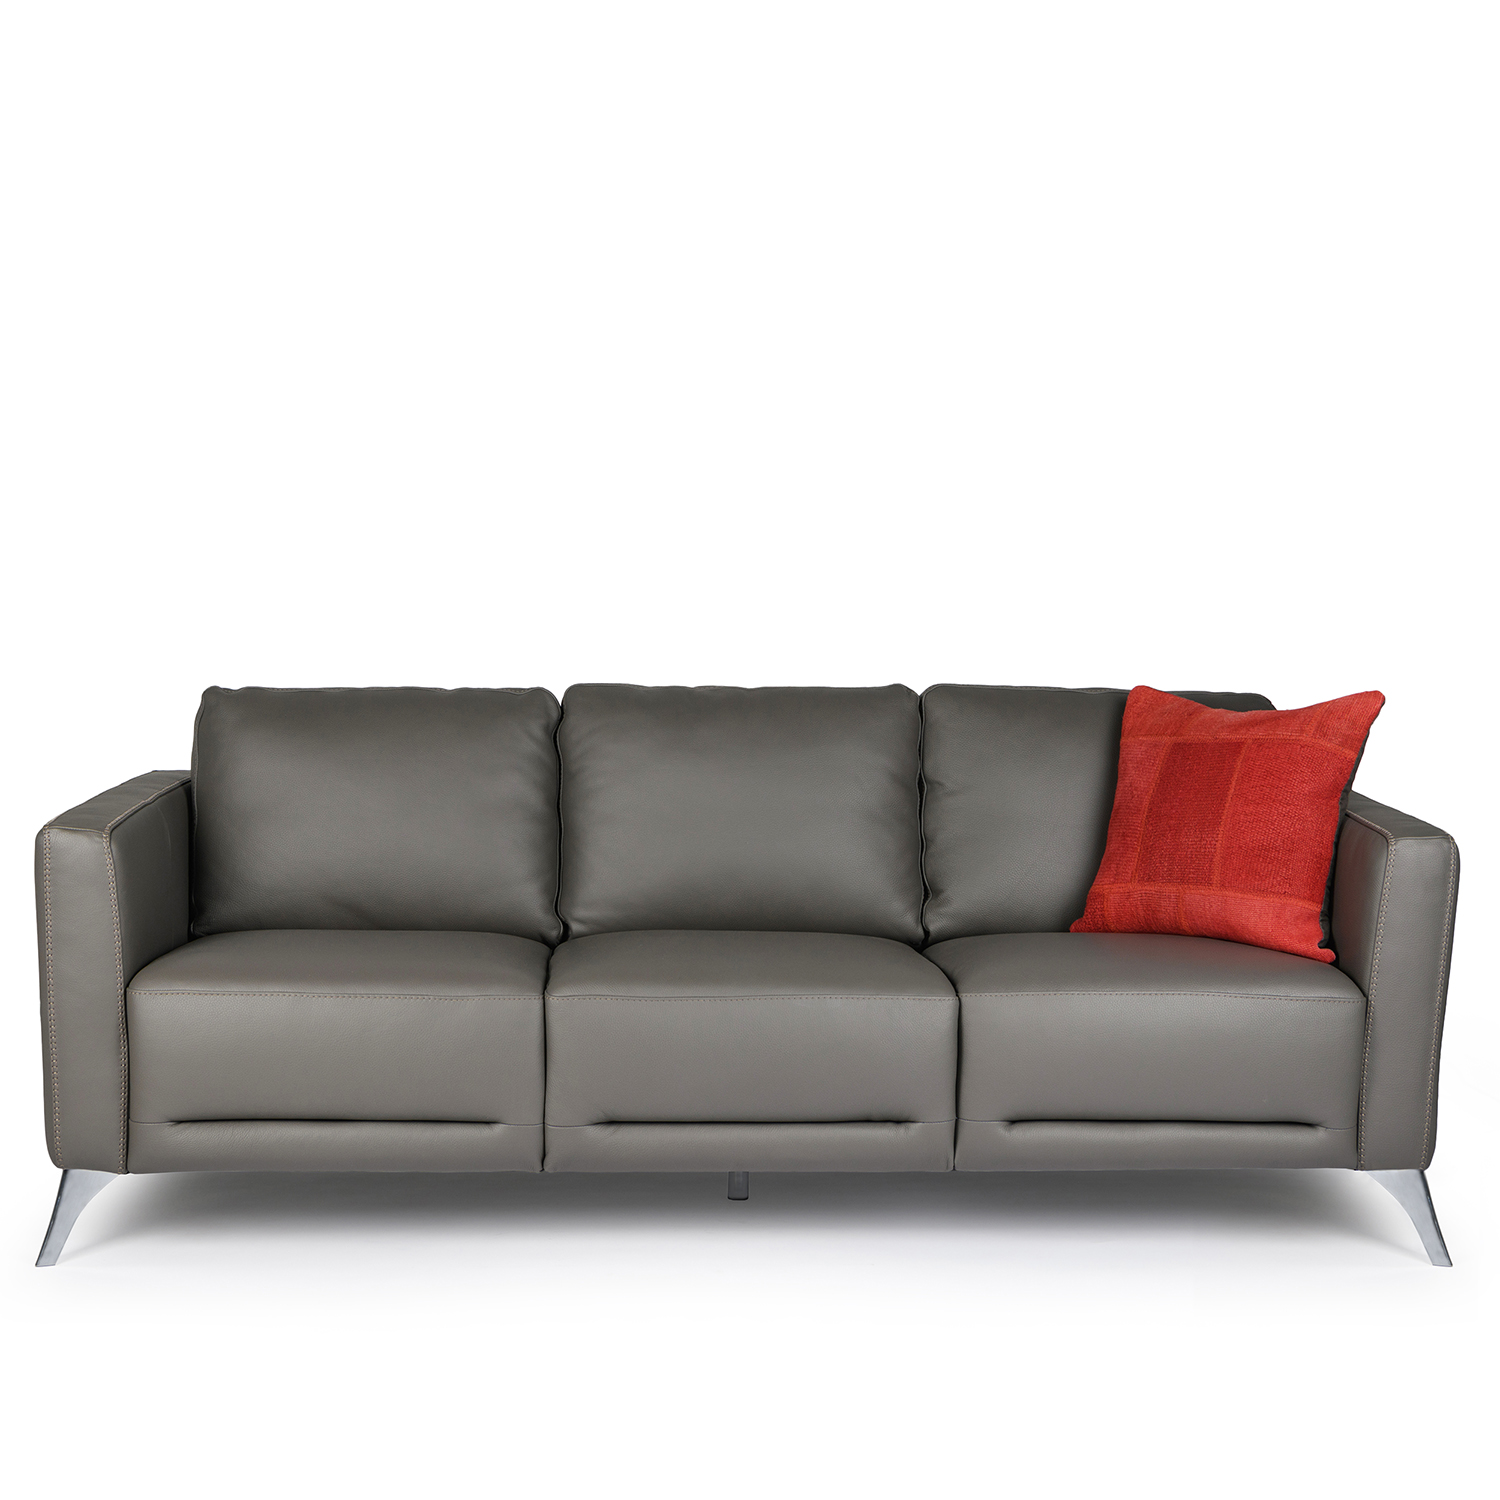 MATIP Sofa